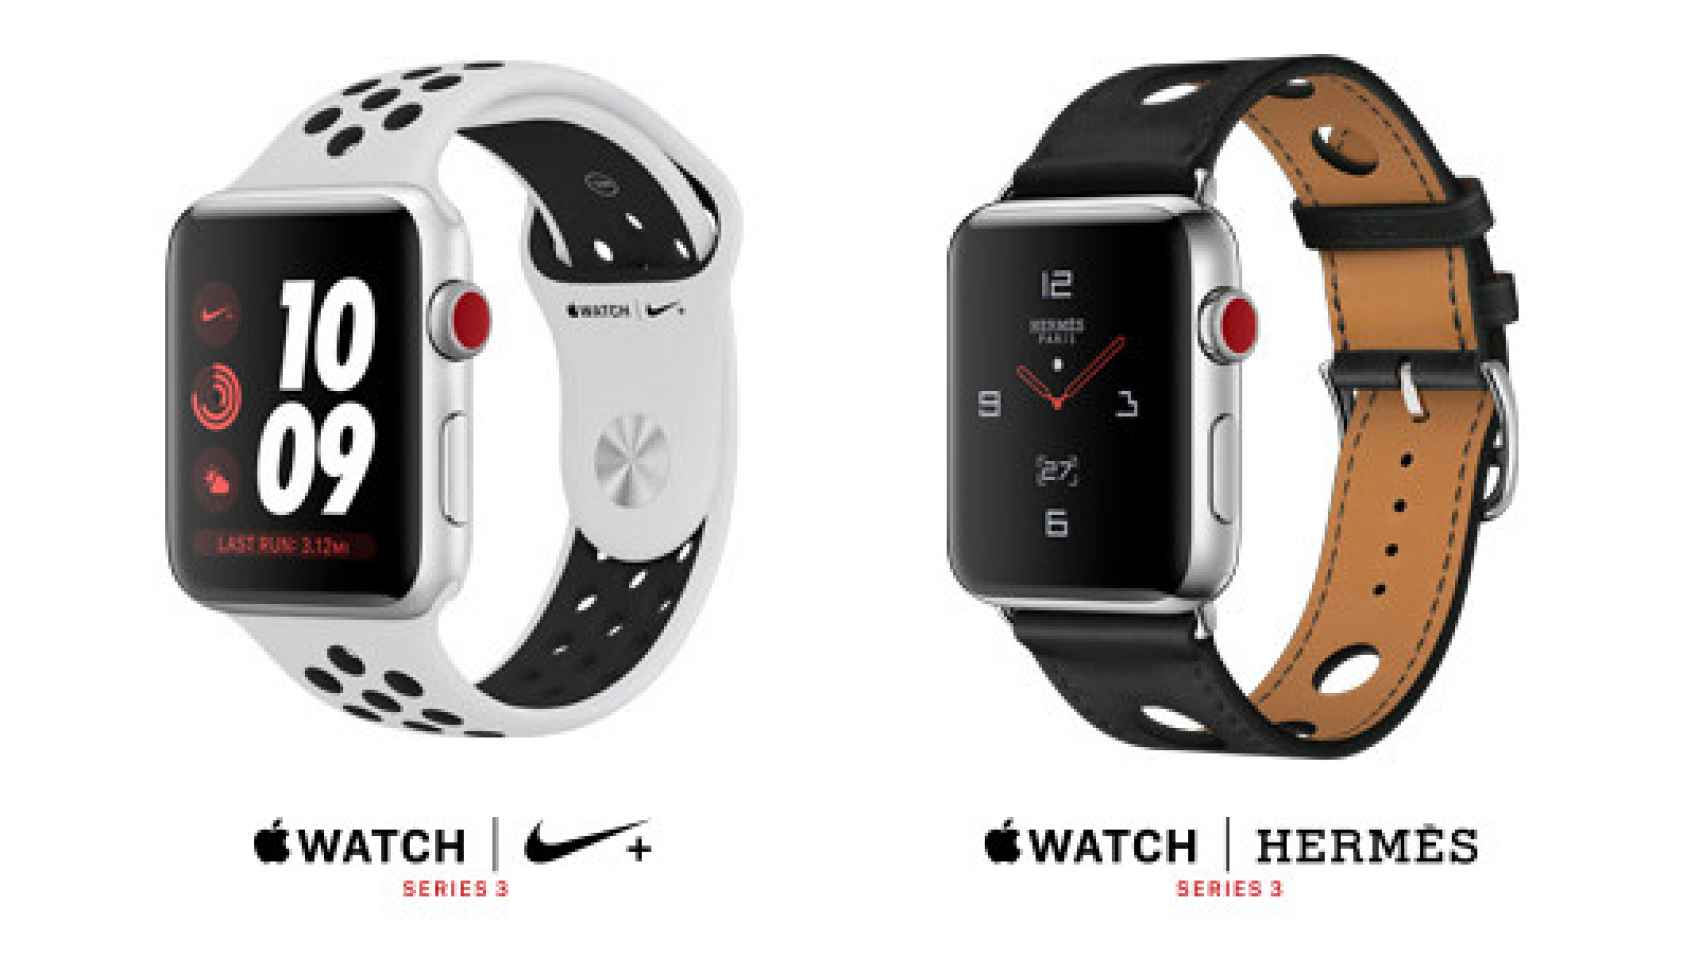 Los nuevos Apple Watch Series 4 presentan importantes novedades